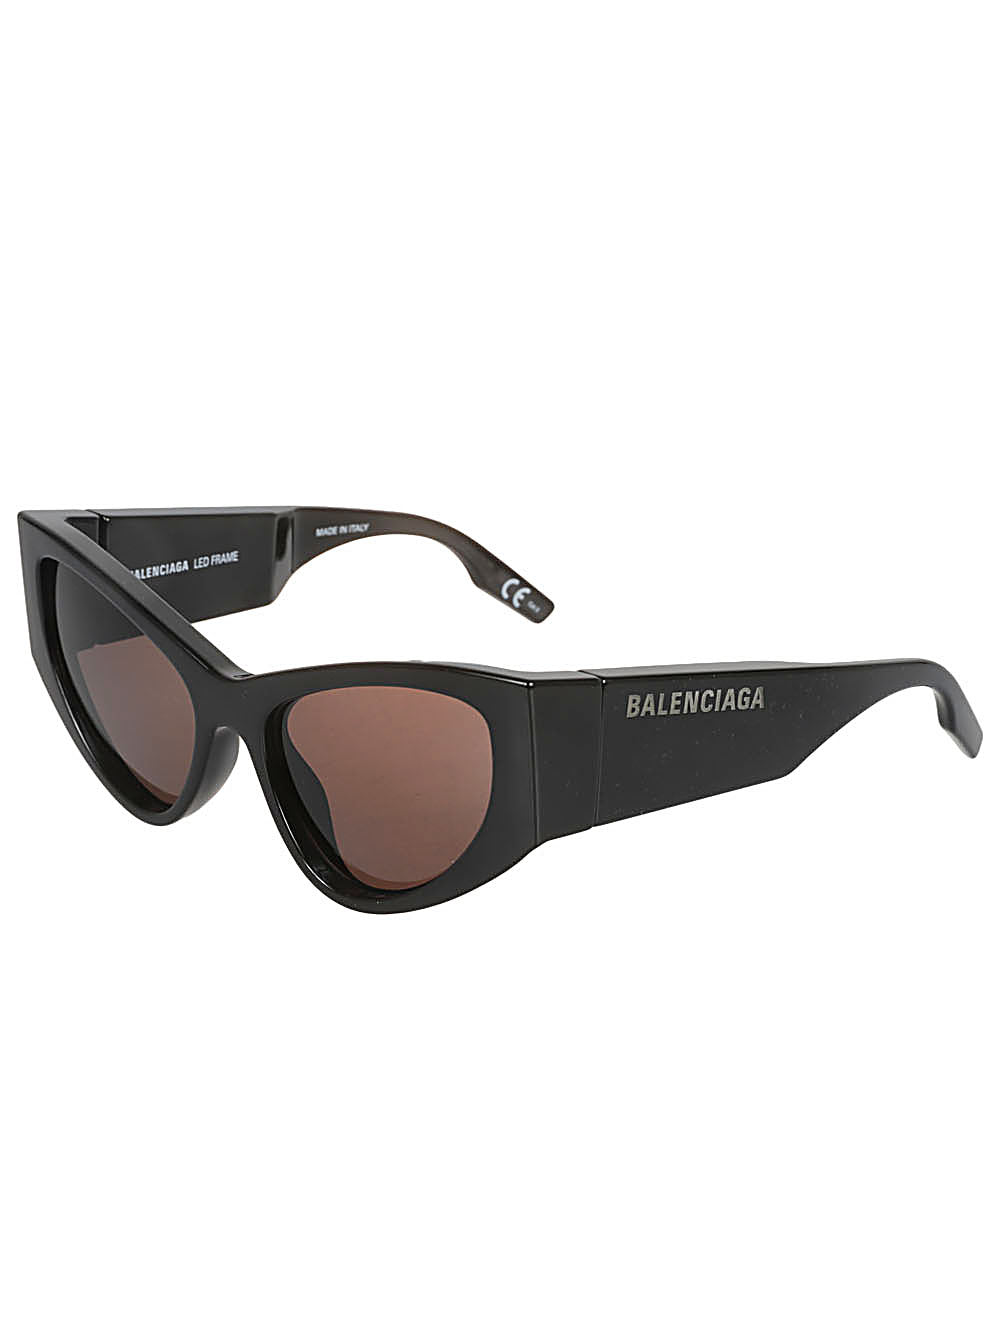 Sung kính Balenciaga đen cho phái nữ - Bộ sưu tập FW23